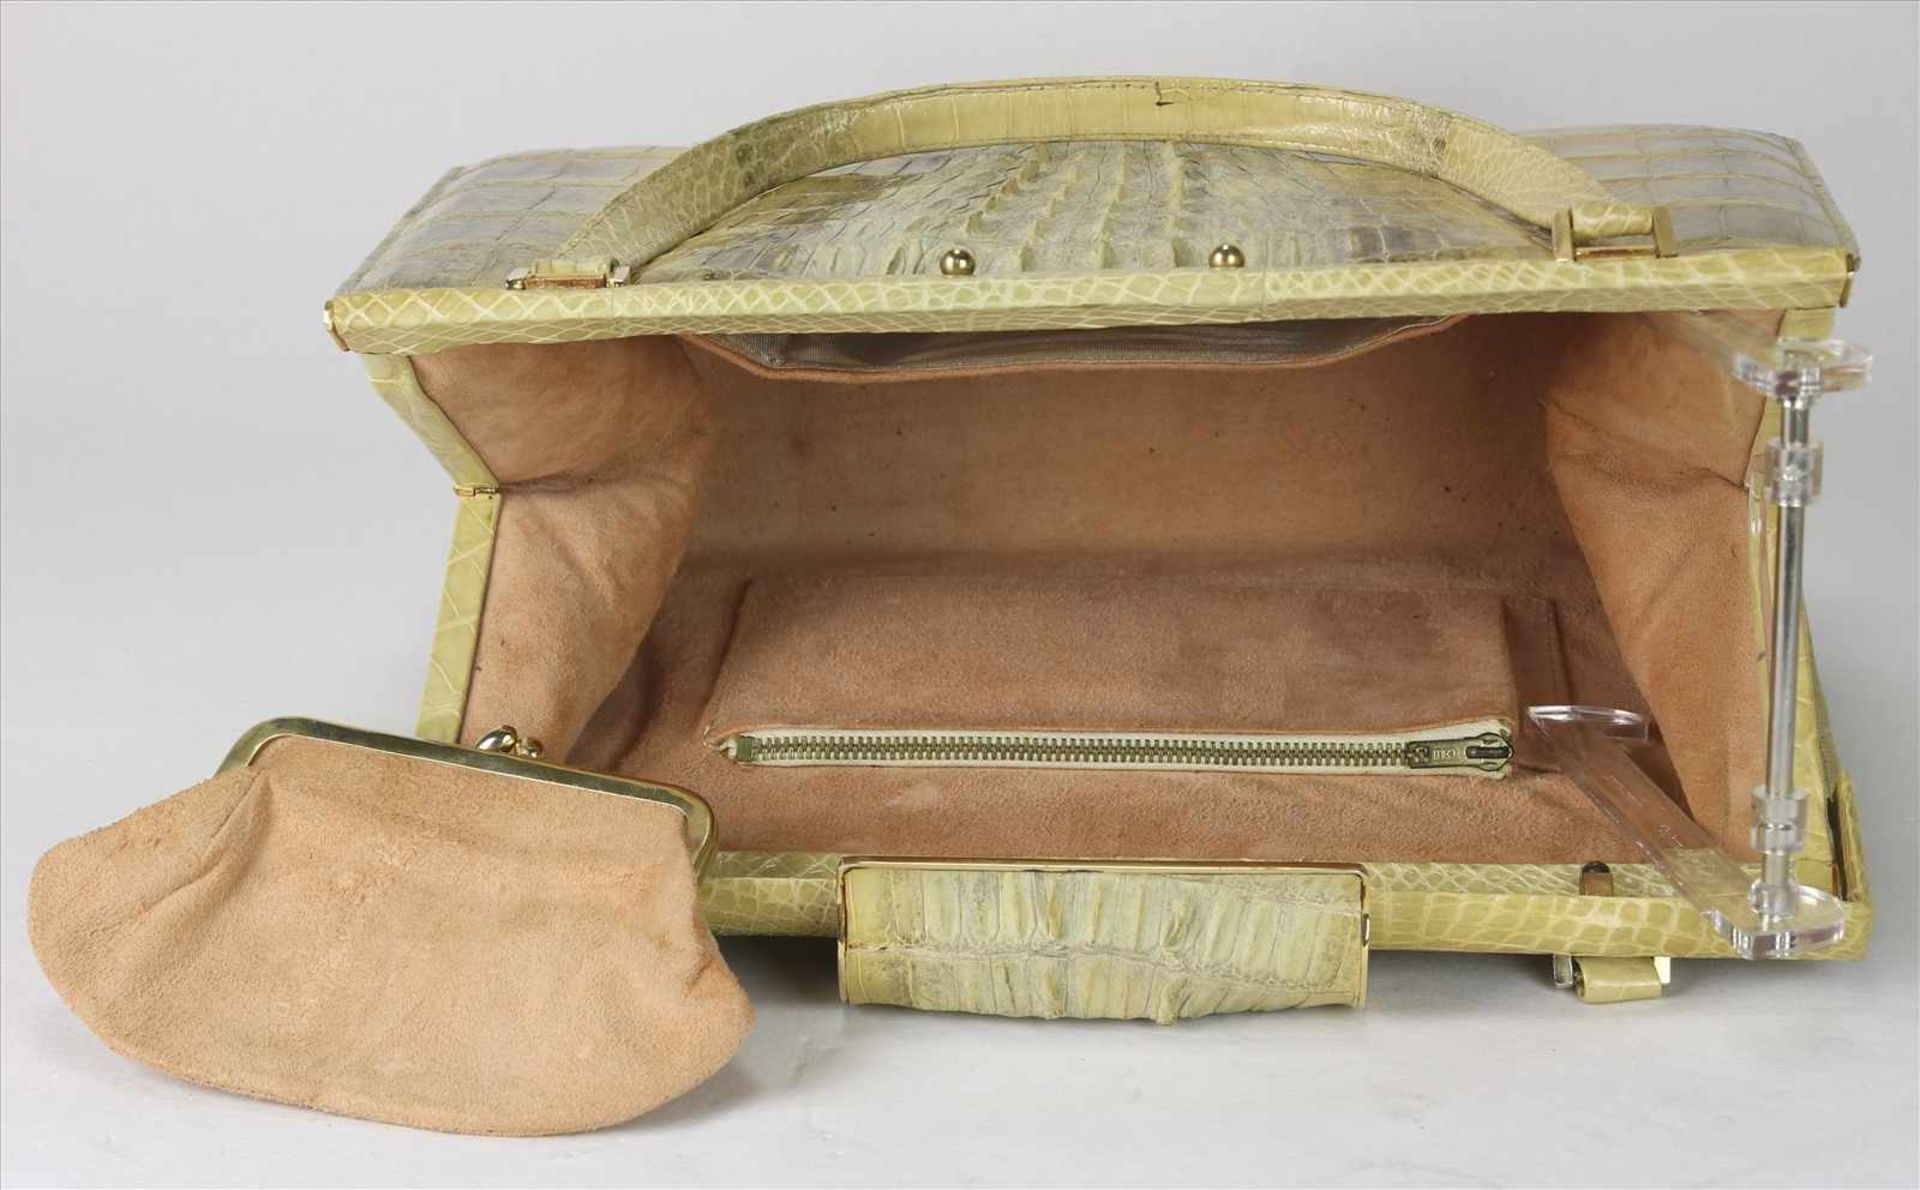 Edle Vintage Handtasche1970-er Jahre. Helle Krokoledertasche. Größe ca. 31 x 10 cm, Höhe ca. 21 cm - Bild 3 aus 3